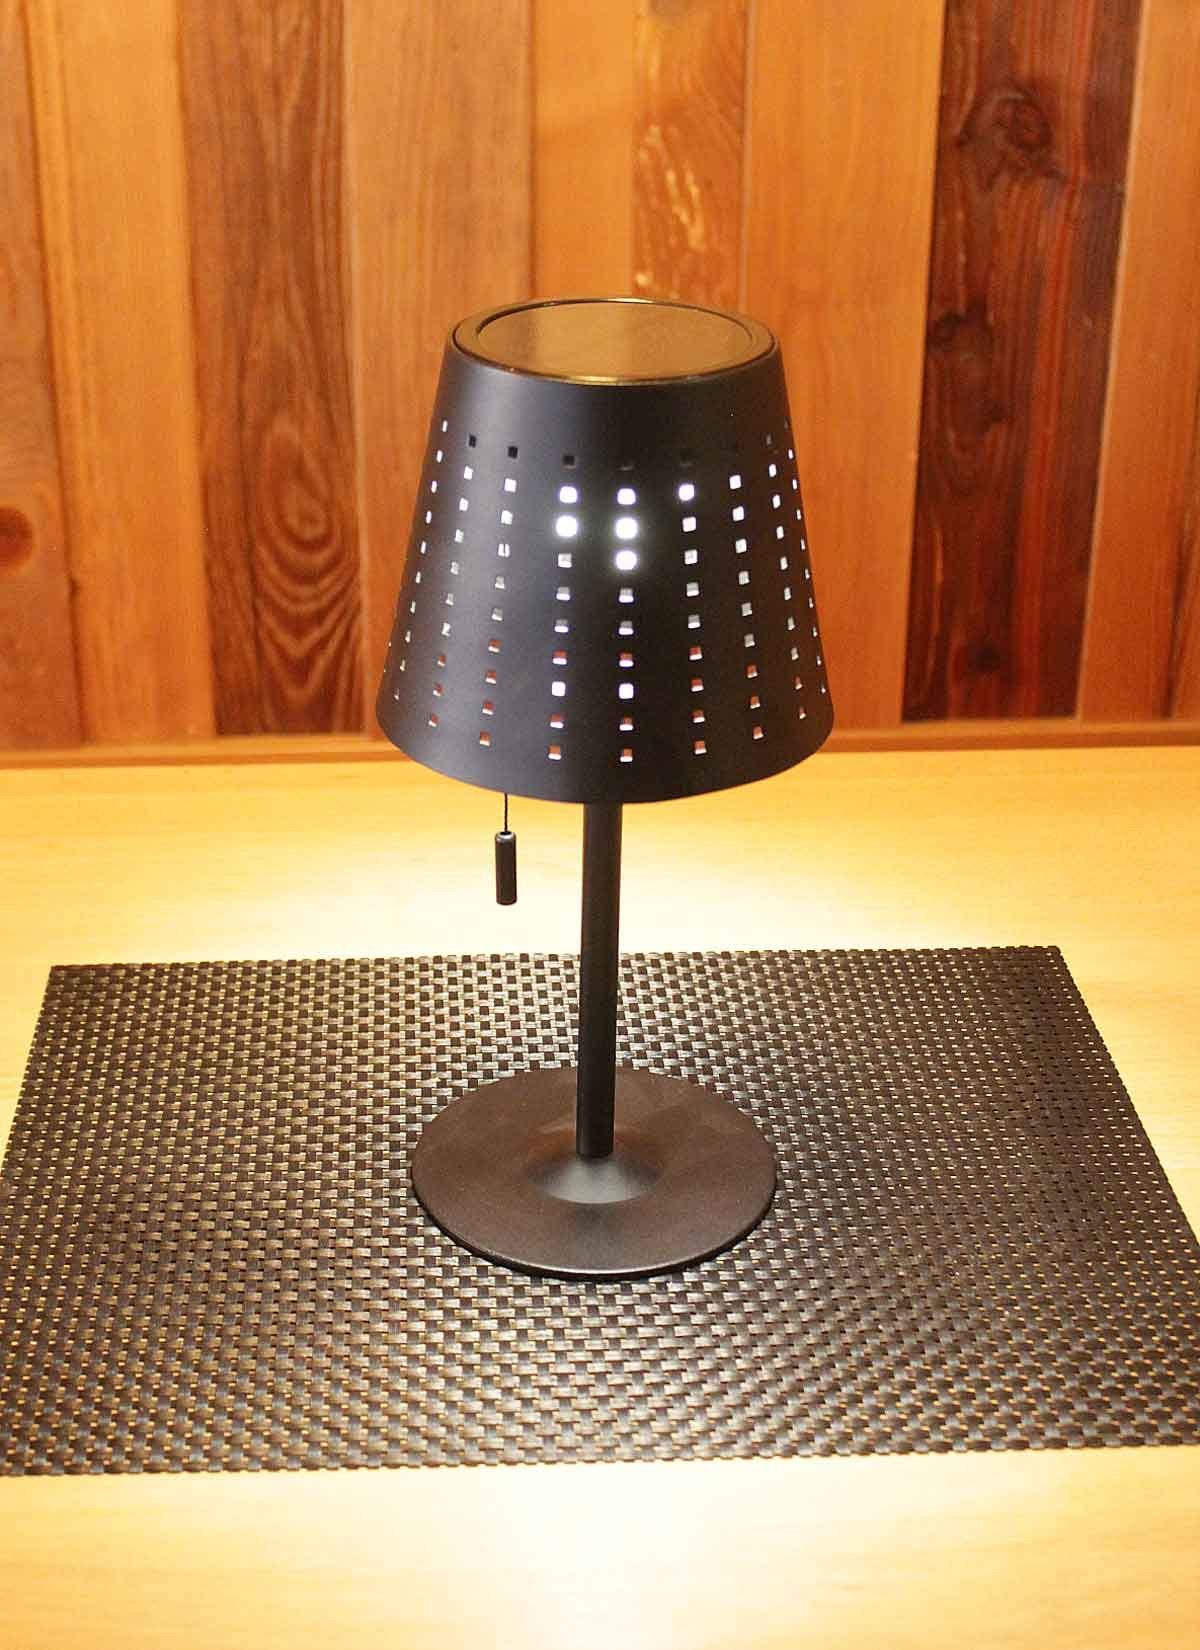 3fach Schnurschalter, fest Tischleuchte Tischleuchte schwarz Vinces Kiom S über LED-Leuchtmittel cm 29,5 dimmbar verbaut, warmweiß Metall, Solar LED,